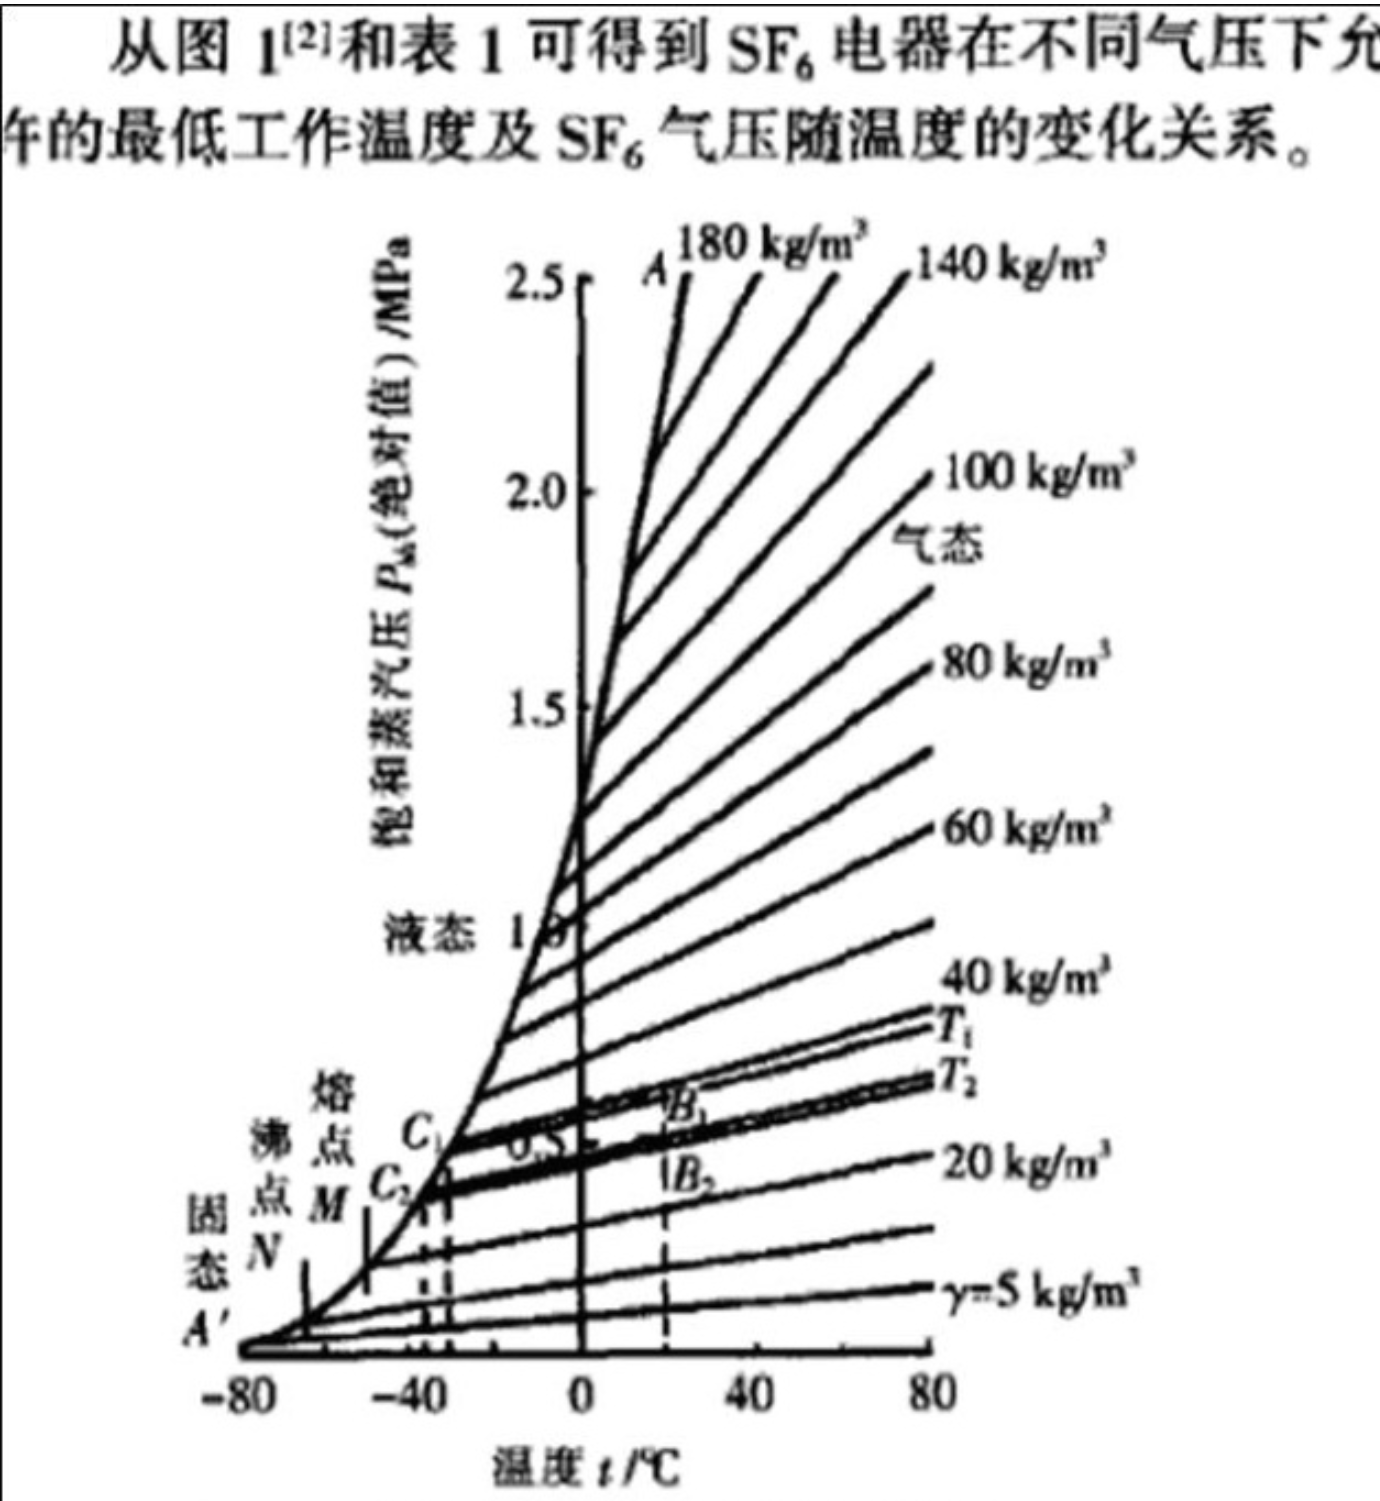 六氟化硫液态压力与温度关系-2.jpg